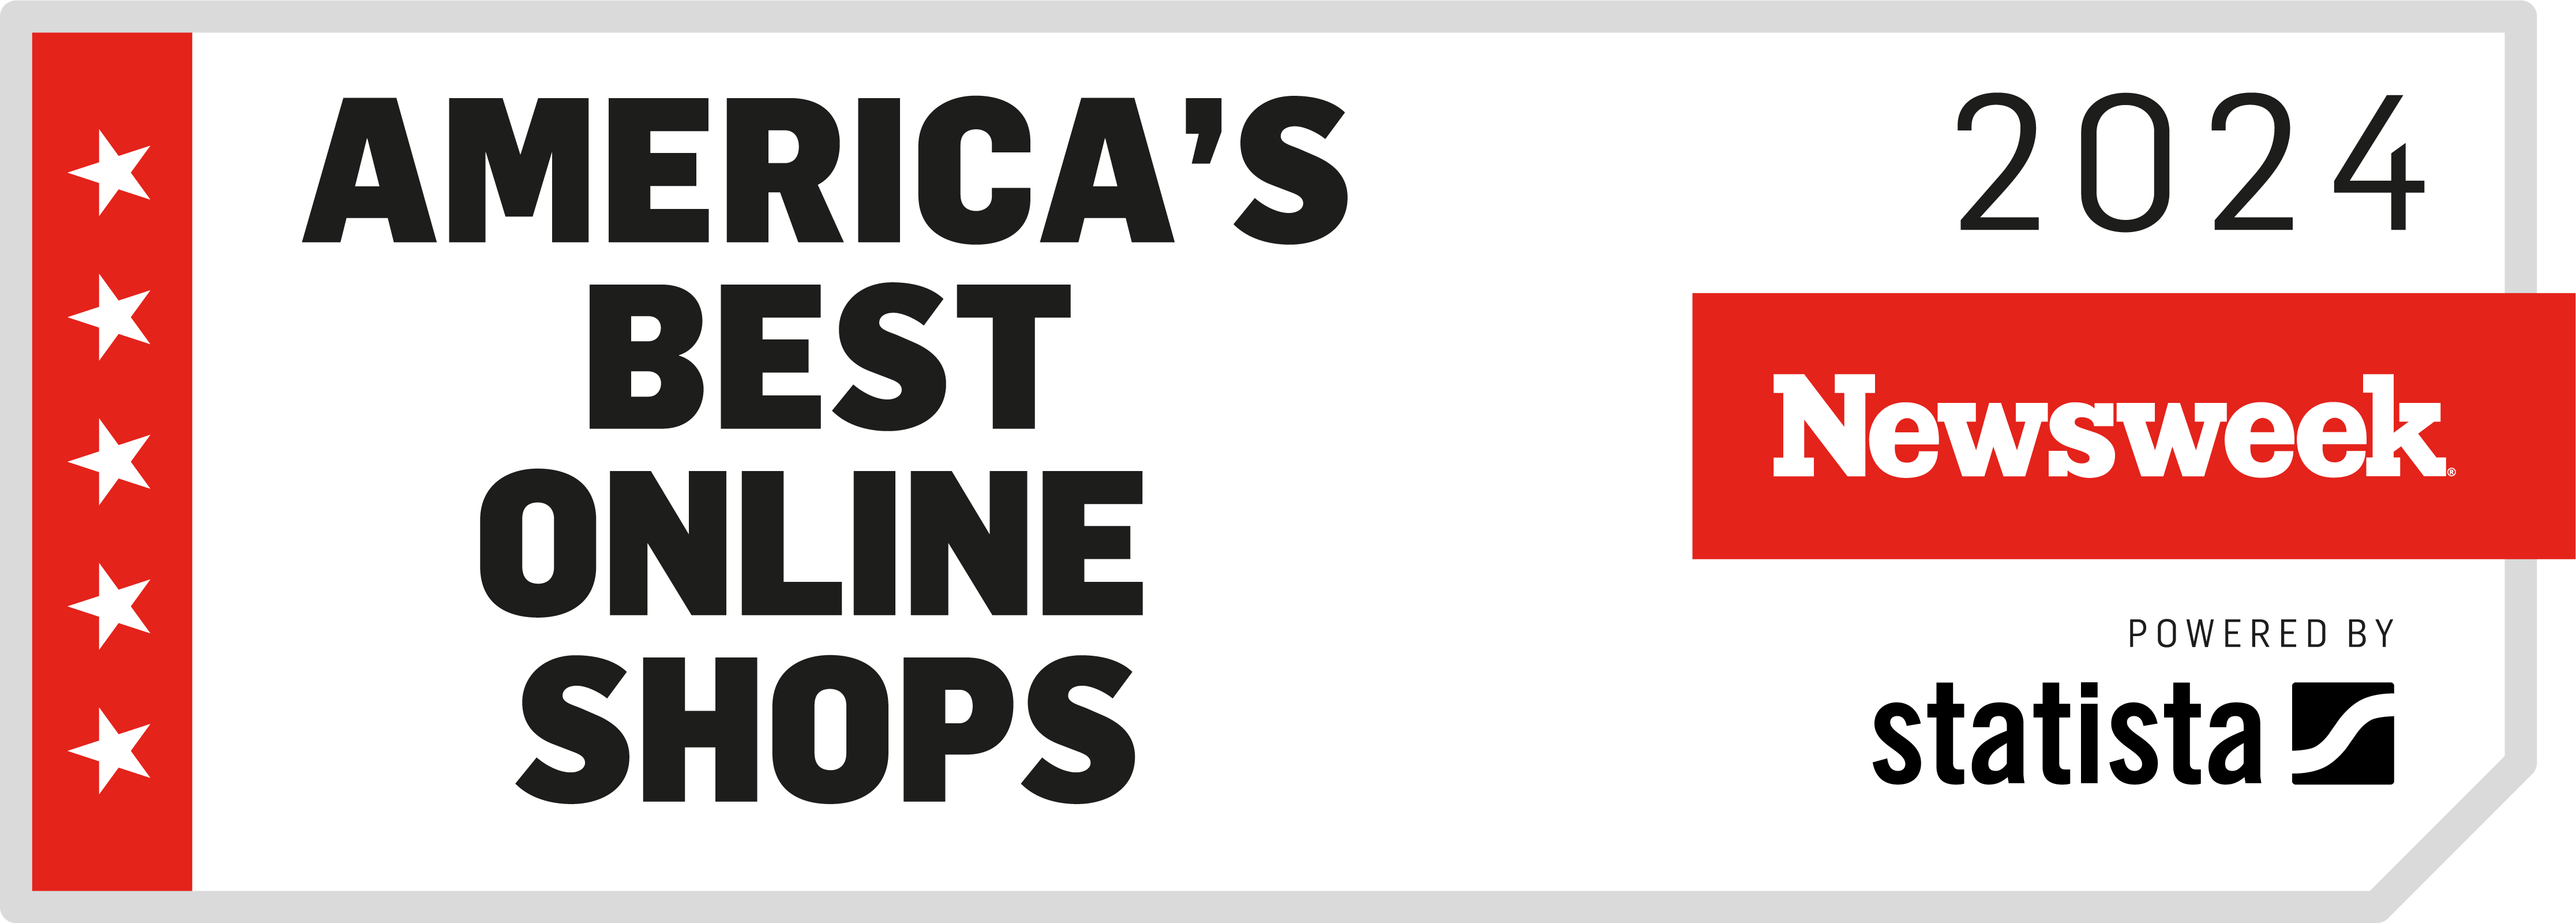 newsweek best online shops